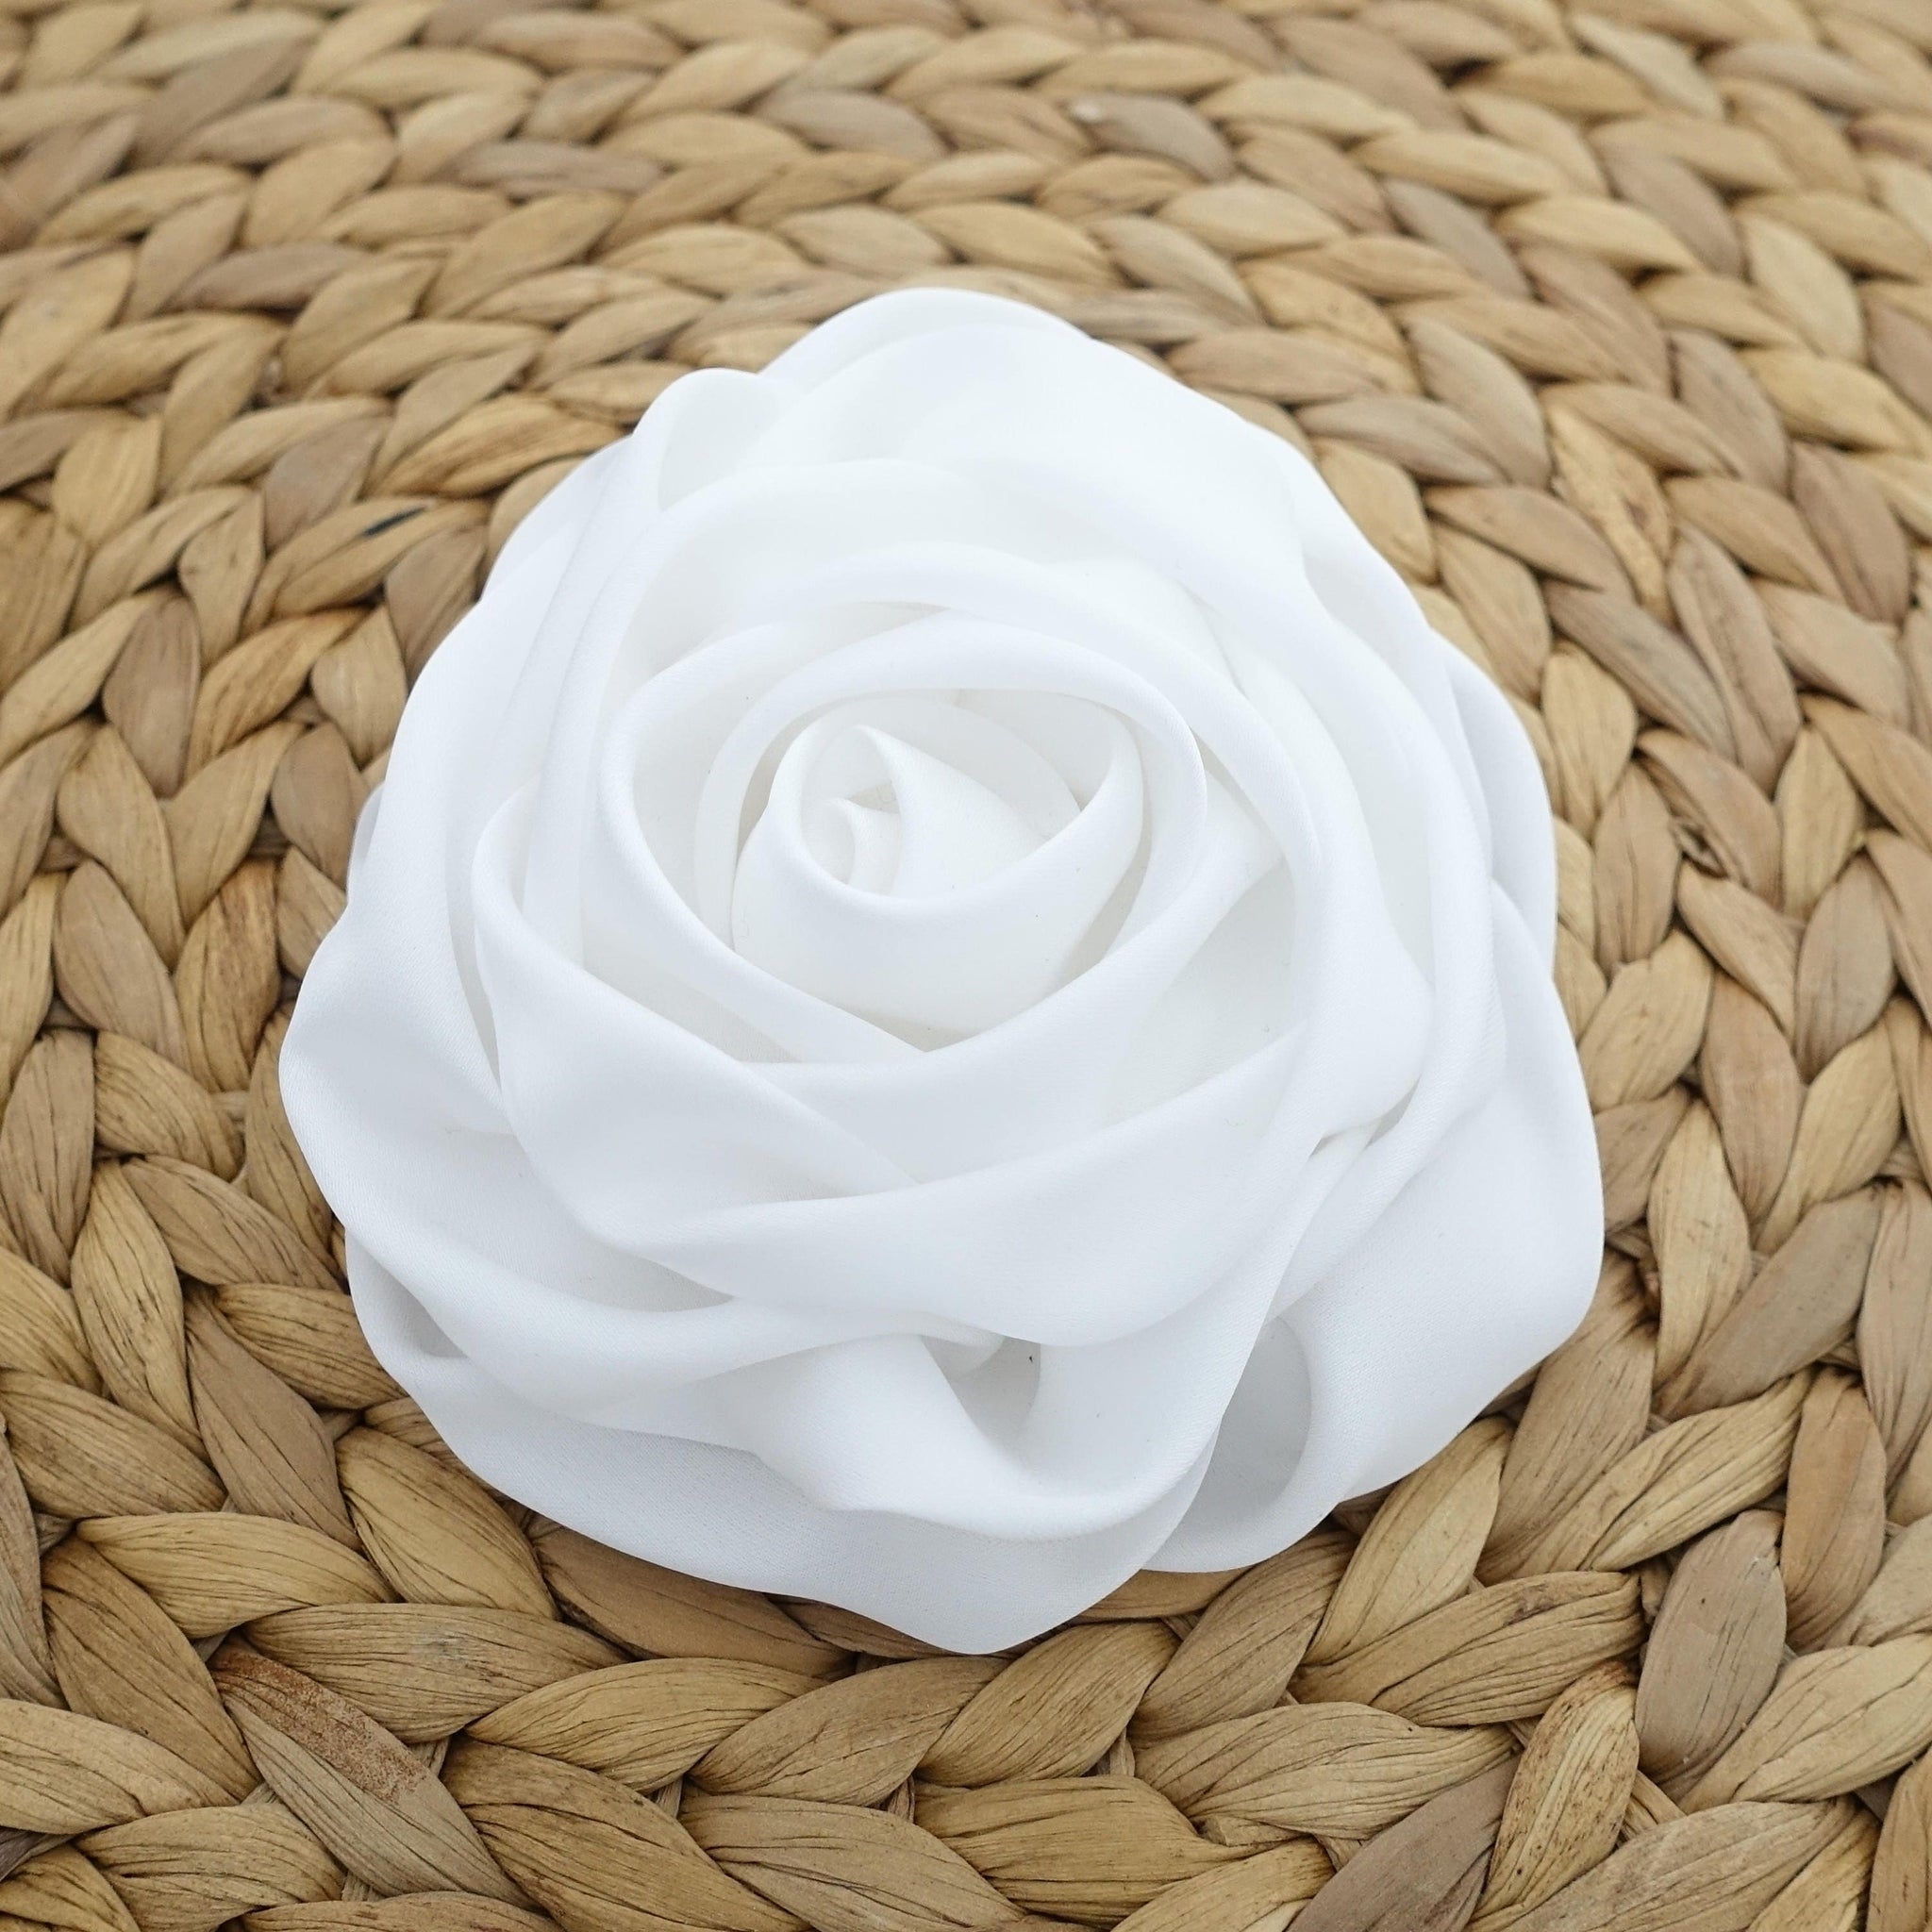 VeryShine 4.33 / Satin White Rose Flower Hair Clip Women Flower Corsage Brooch Accessories